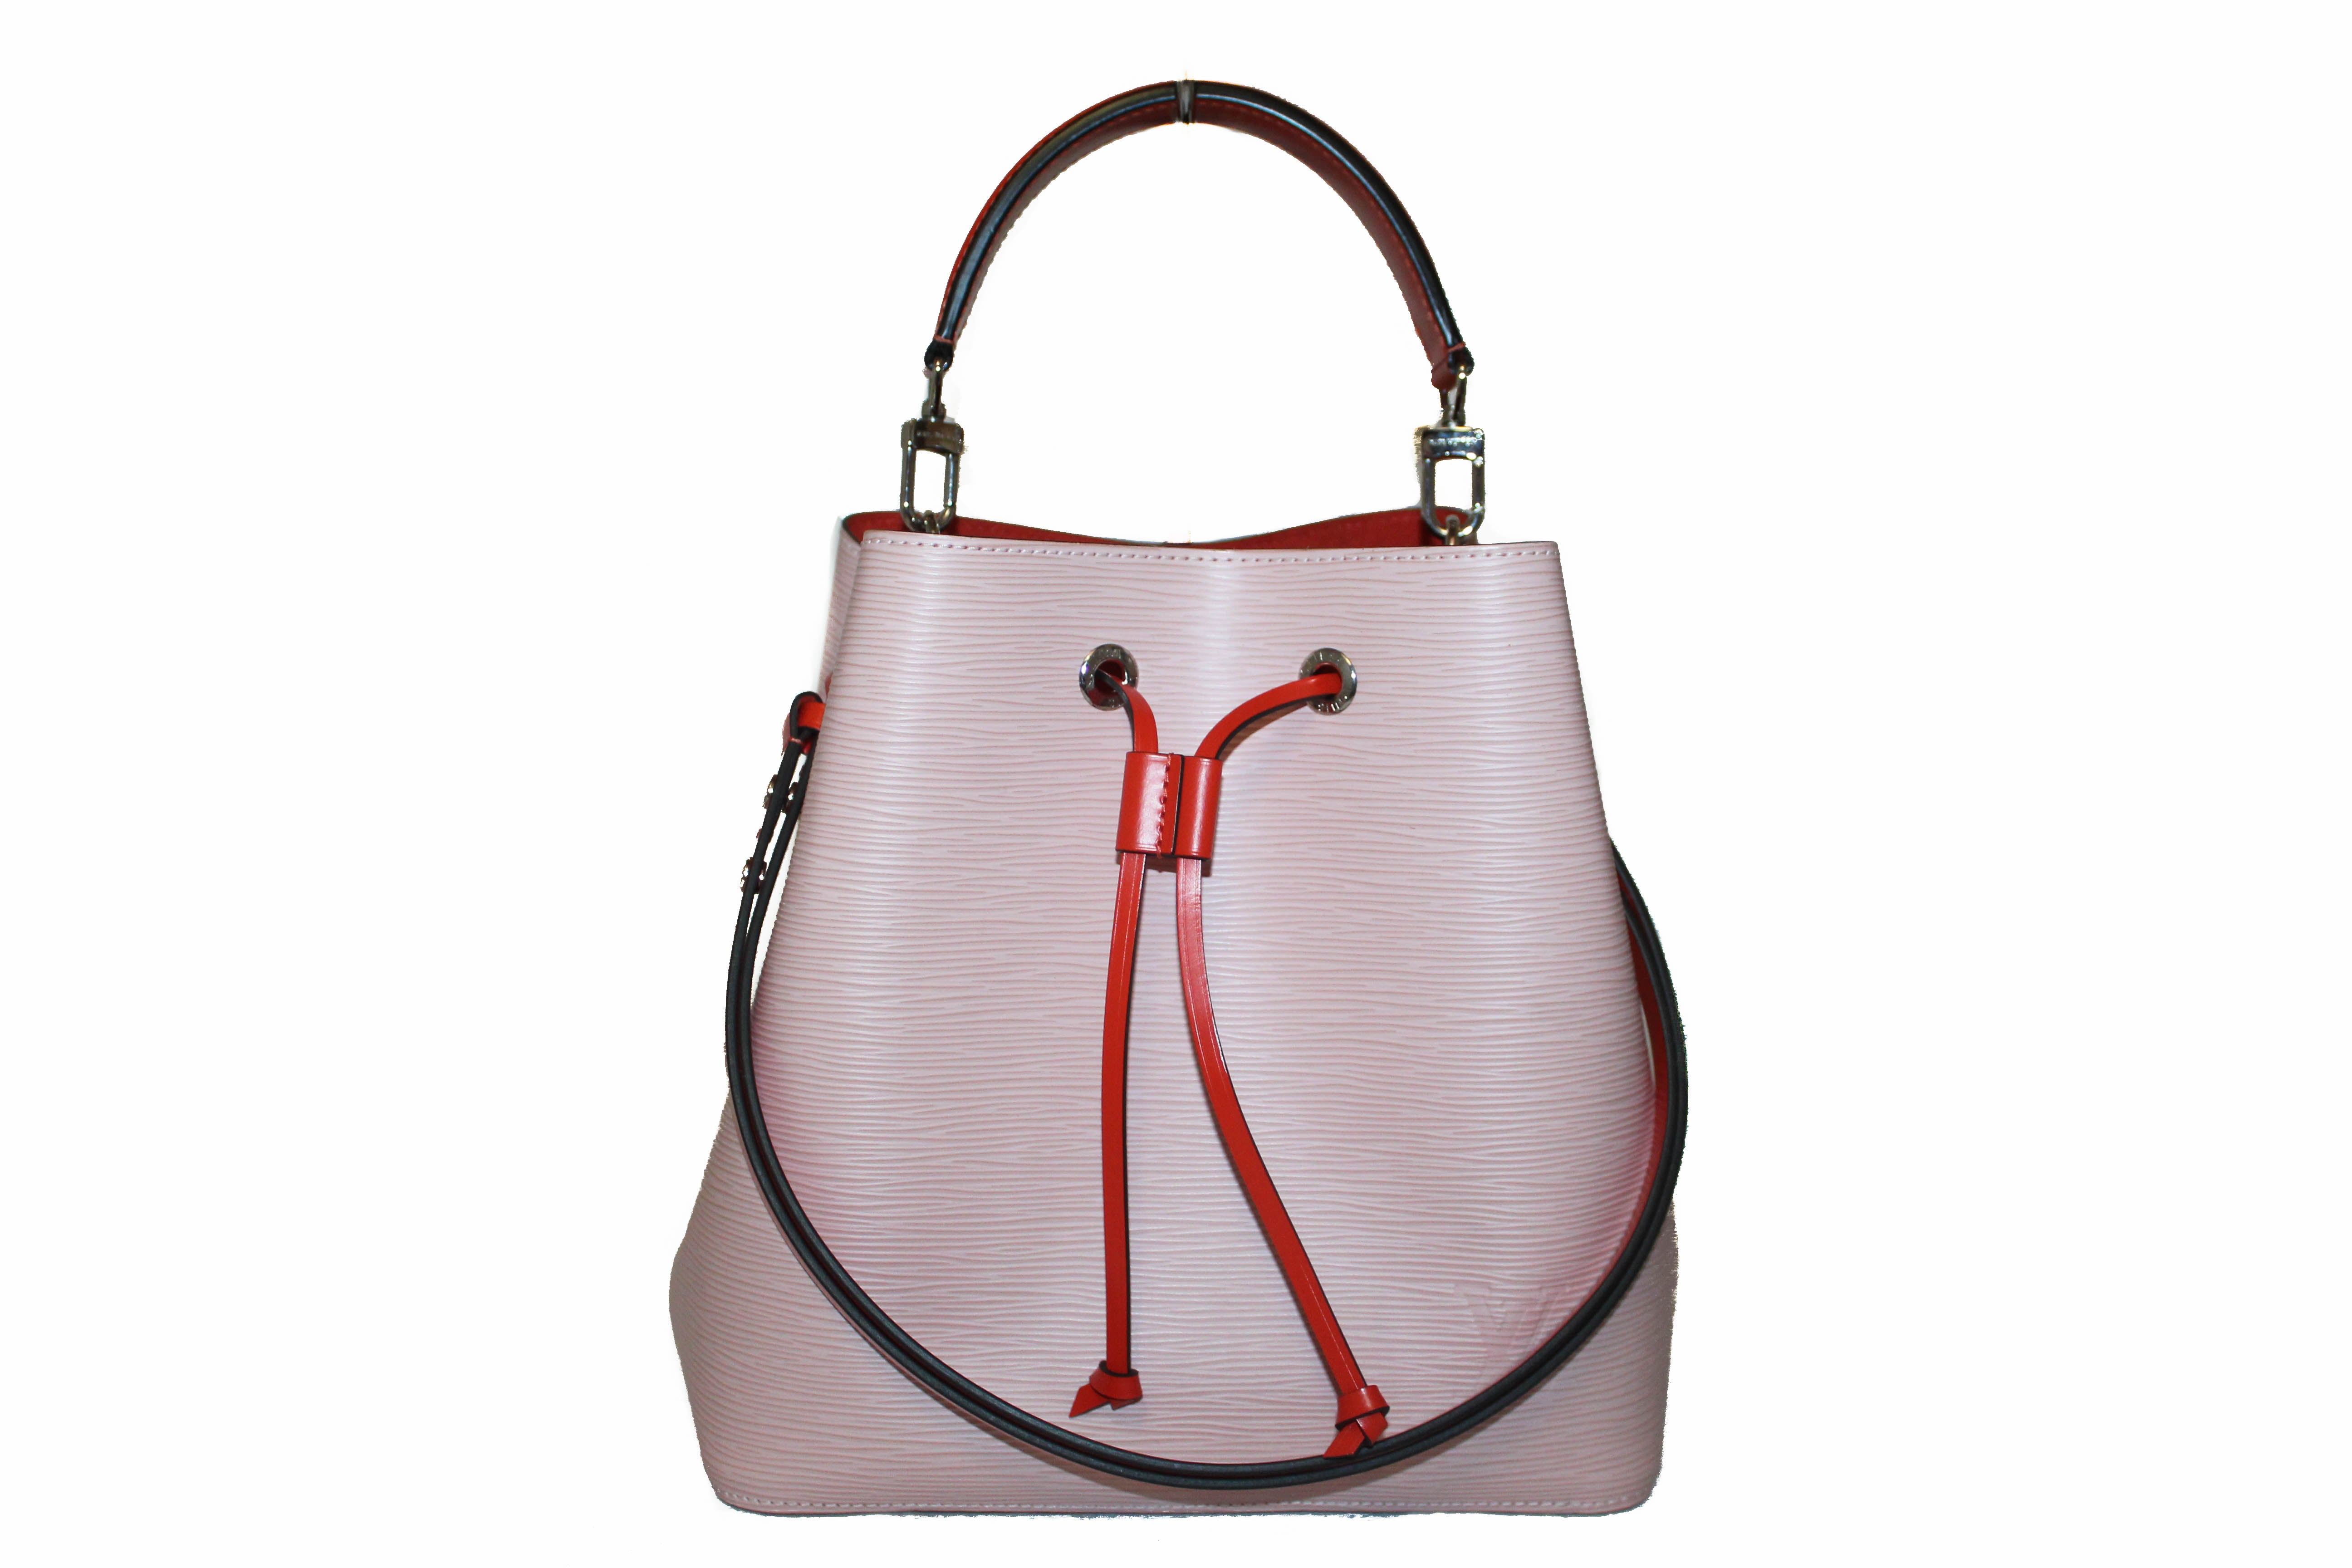 Authentic Louis Vuitton Epi Neo Noe in Ballerine Pink Bucket Shoulder Bag  M54370